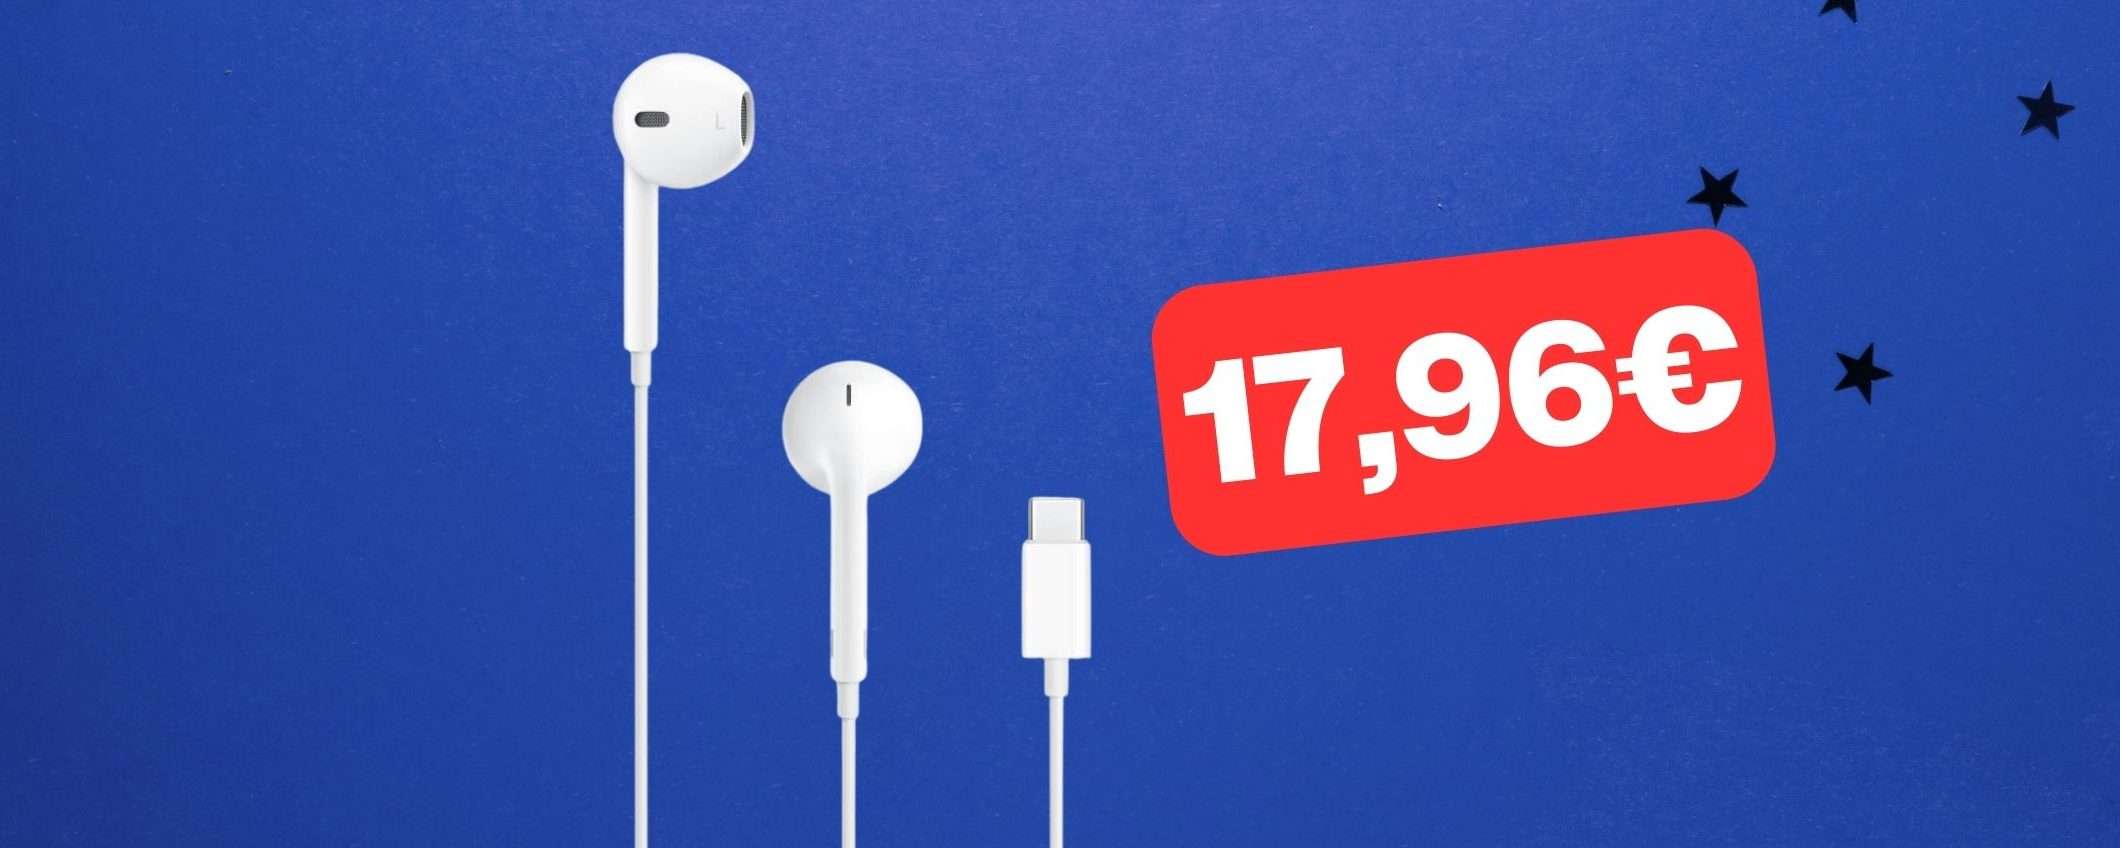 Auricolari Apple EarPods USB-C a soli 17,96€ su Amazon: offerta di Natale